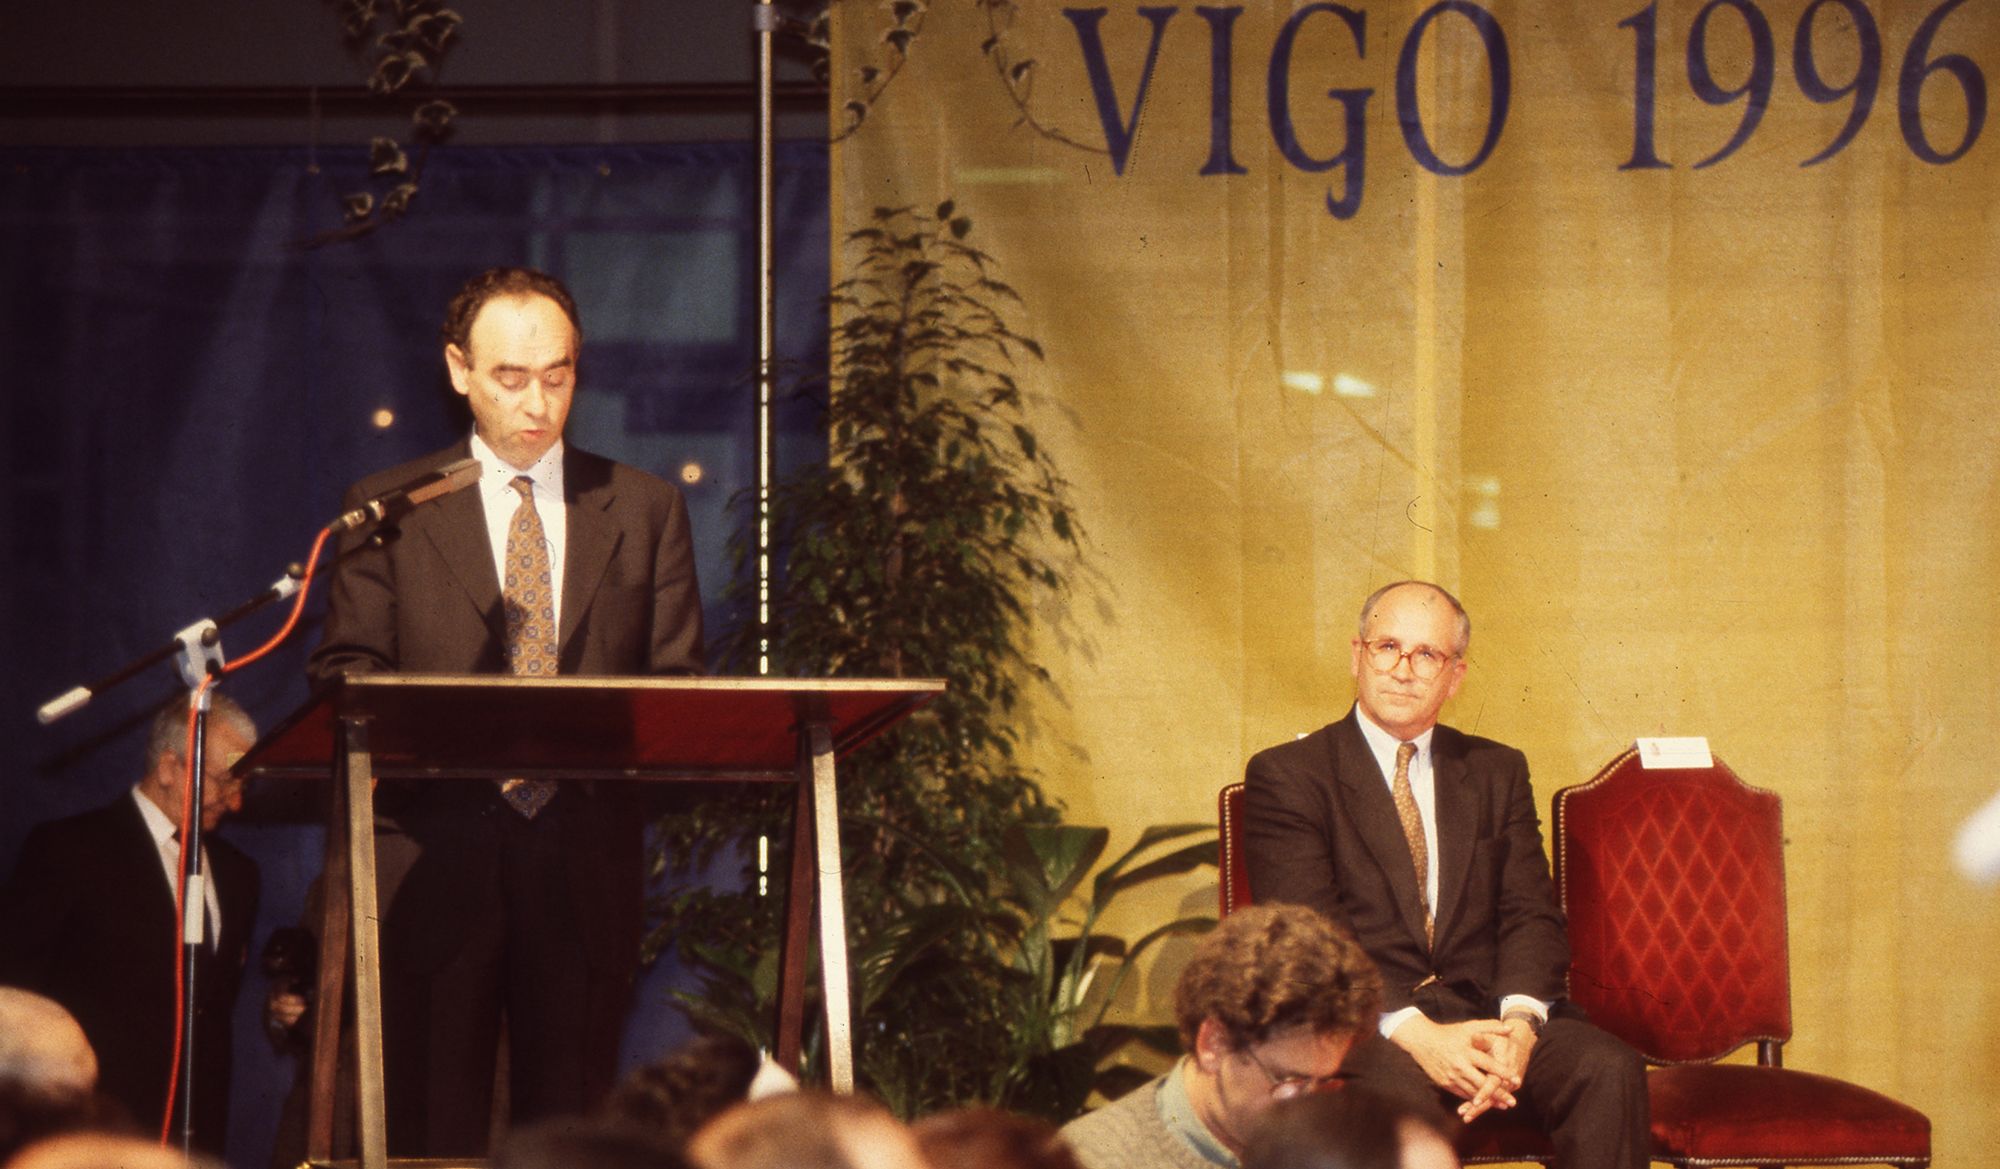 Ceferino de Blas, subdirector general de Faro de Vigo y Arnand David Beauregand, director de Citroen, durante la entrega de premios a los Vigueses Distinguidos 1996 (2).jpg